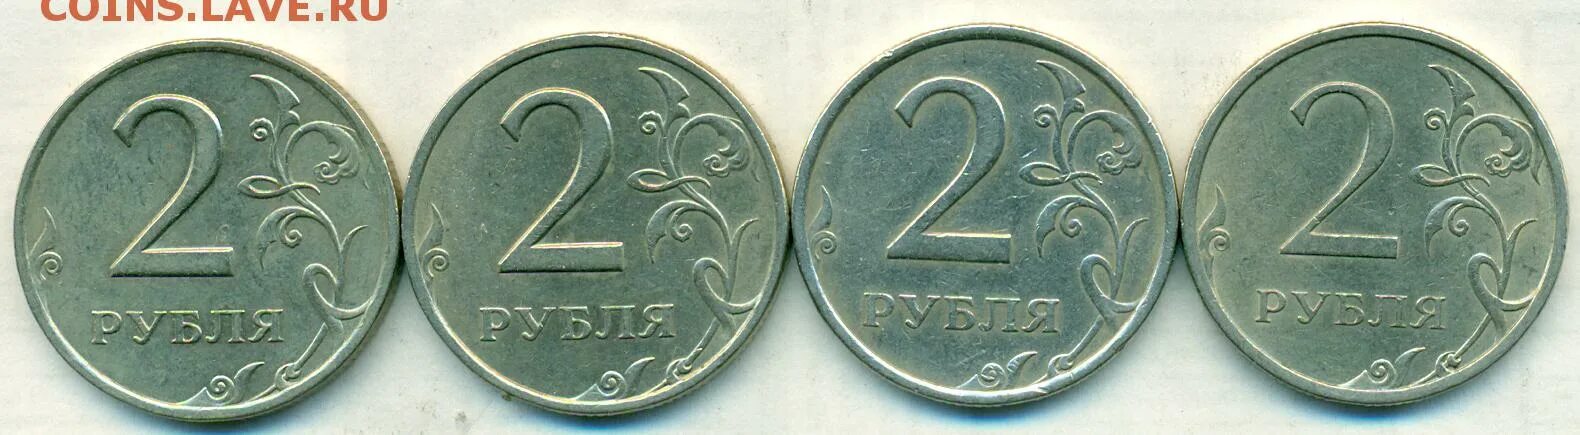 2 Рубля 2007 ММД. 2 Рубля банк России 2013. 2,4 Руб+1,6 руб. 2 Рубля (4 мая 2000) Смоленск. 35 6 в рублях